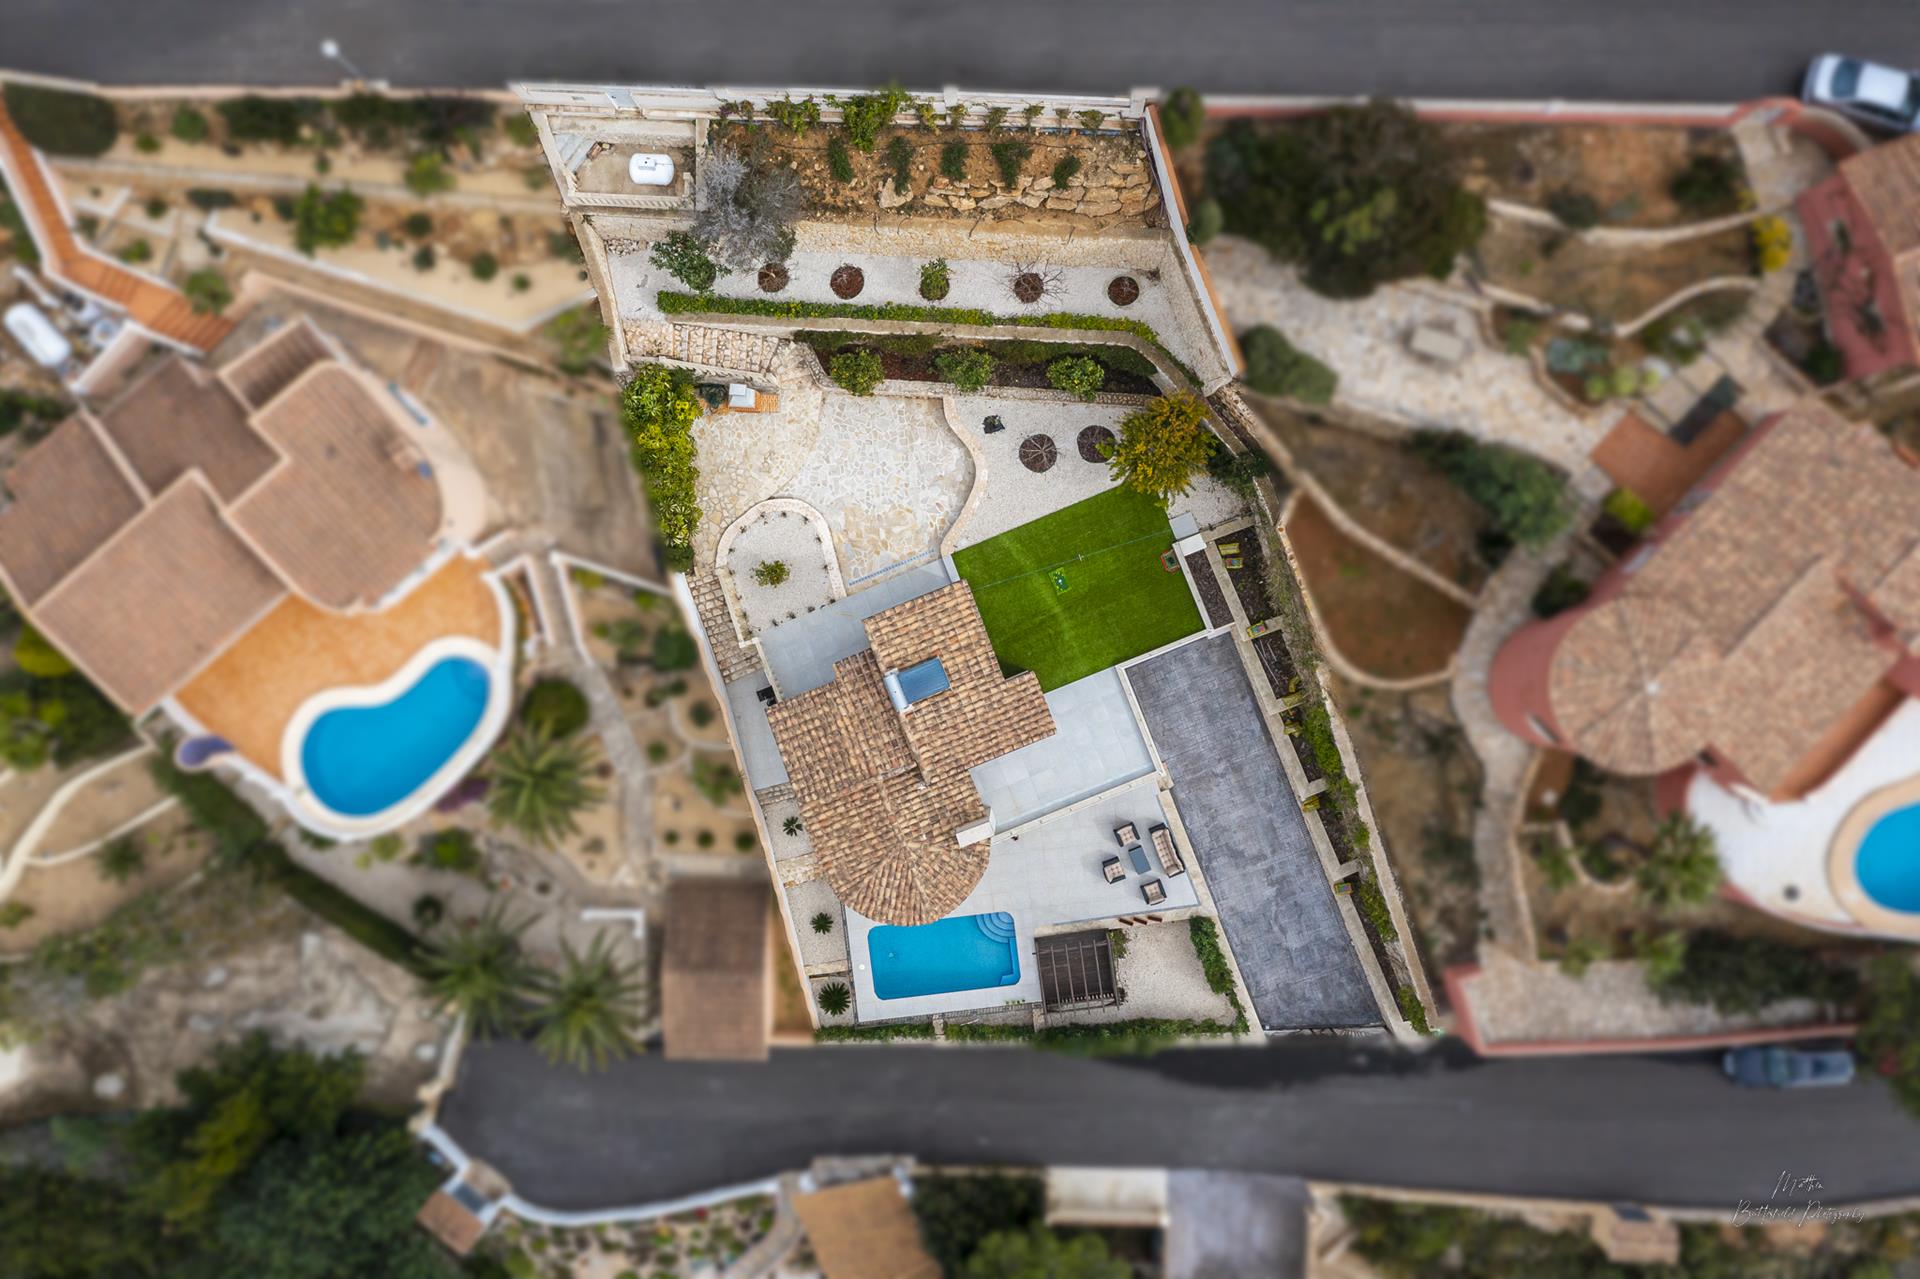 Gerenoveerde villa met privé zwembad en garage